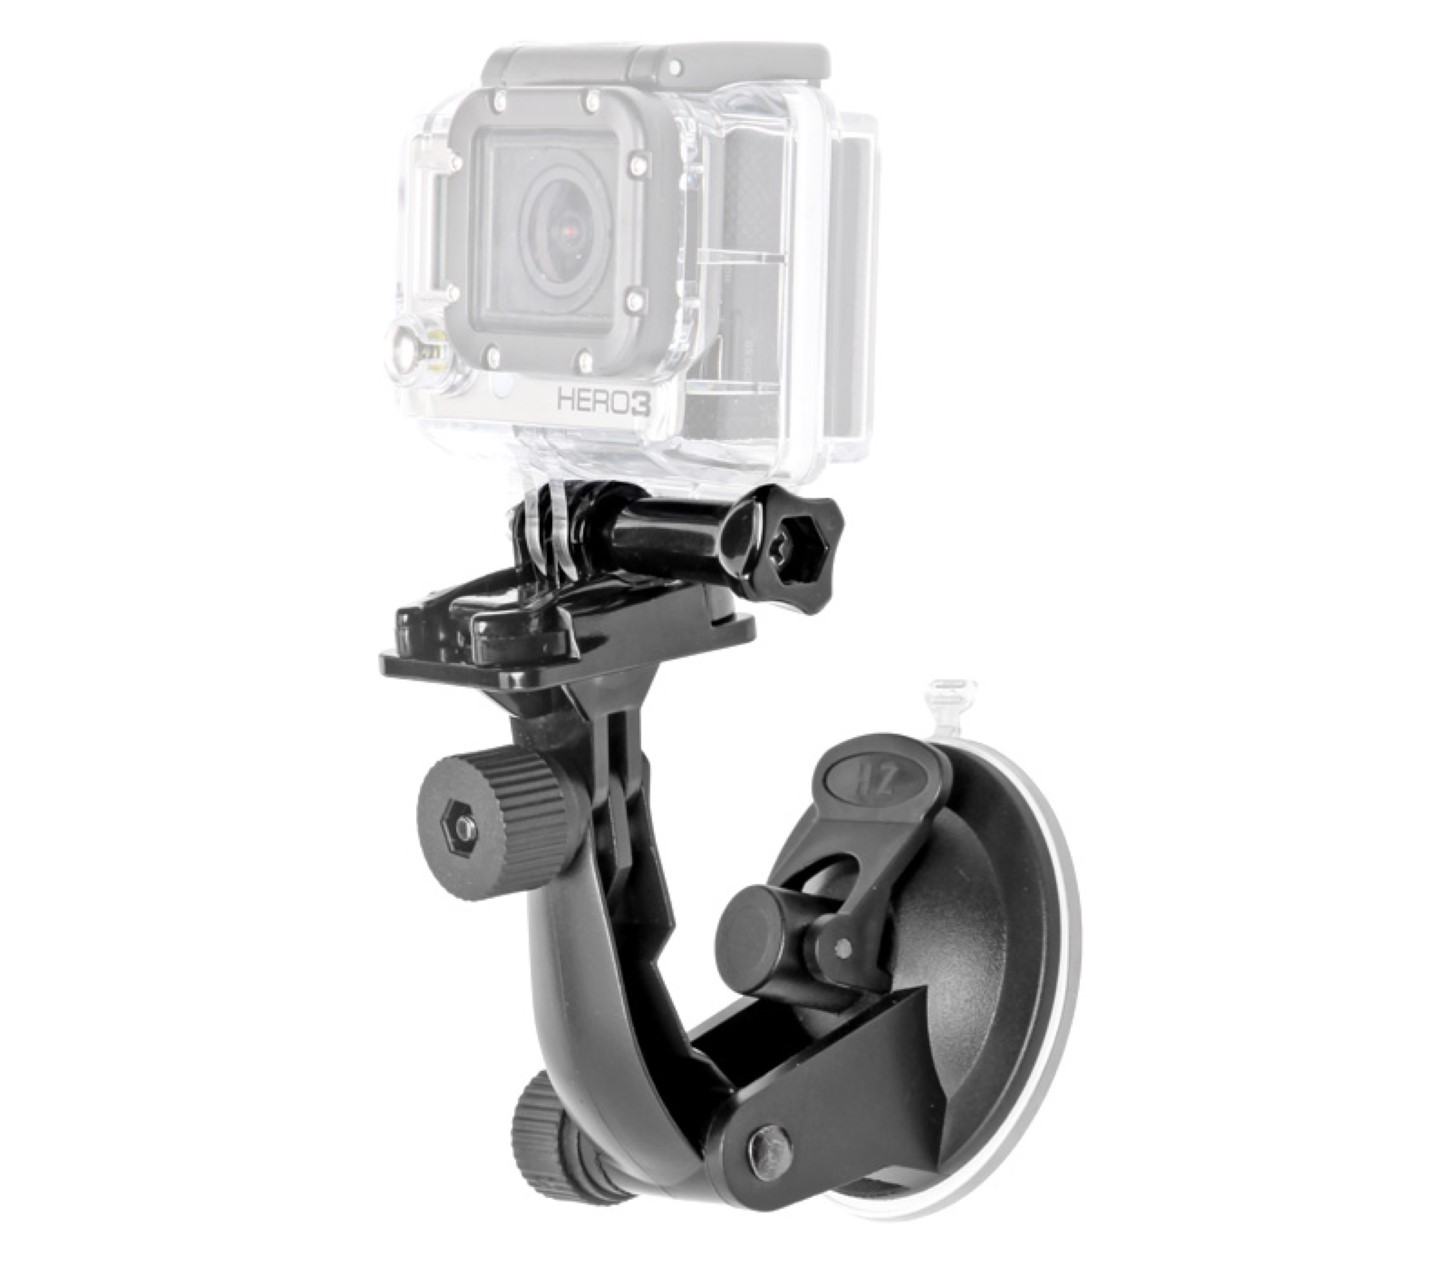 Suction Cup Mount, Saugnapf-Halterung für GoPro Kamera